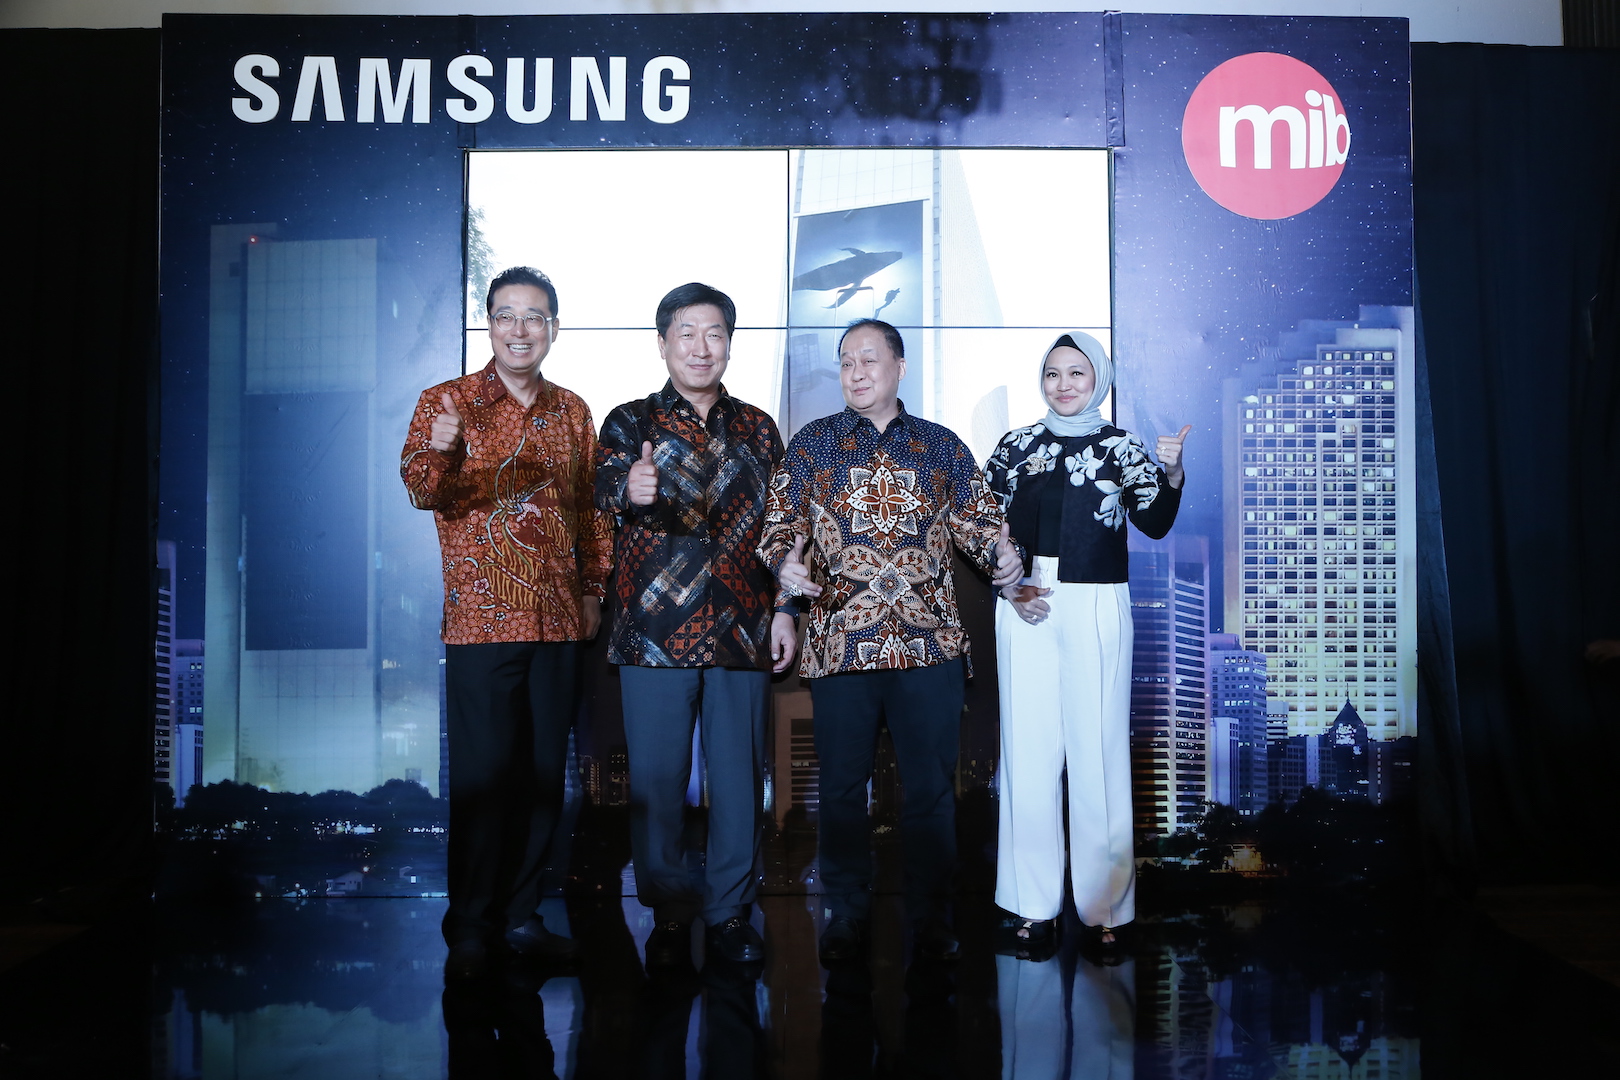 Samsung Hadirkan Samsung LED Outdoor Screen Panel Terbesar di Indonesia Berukuran 450m2